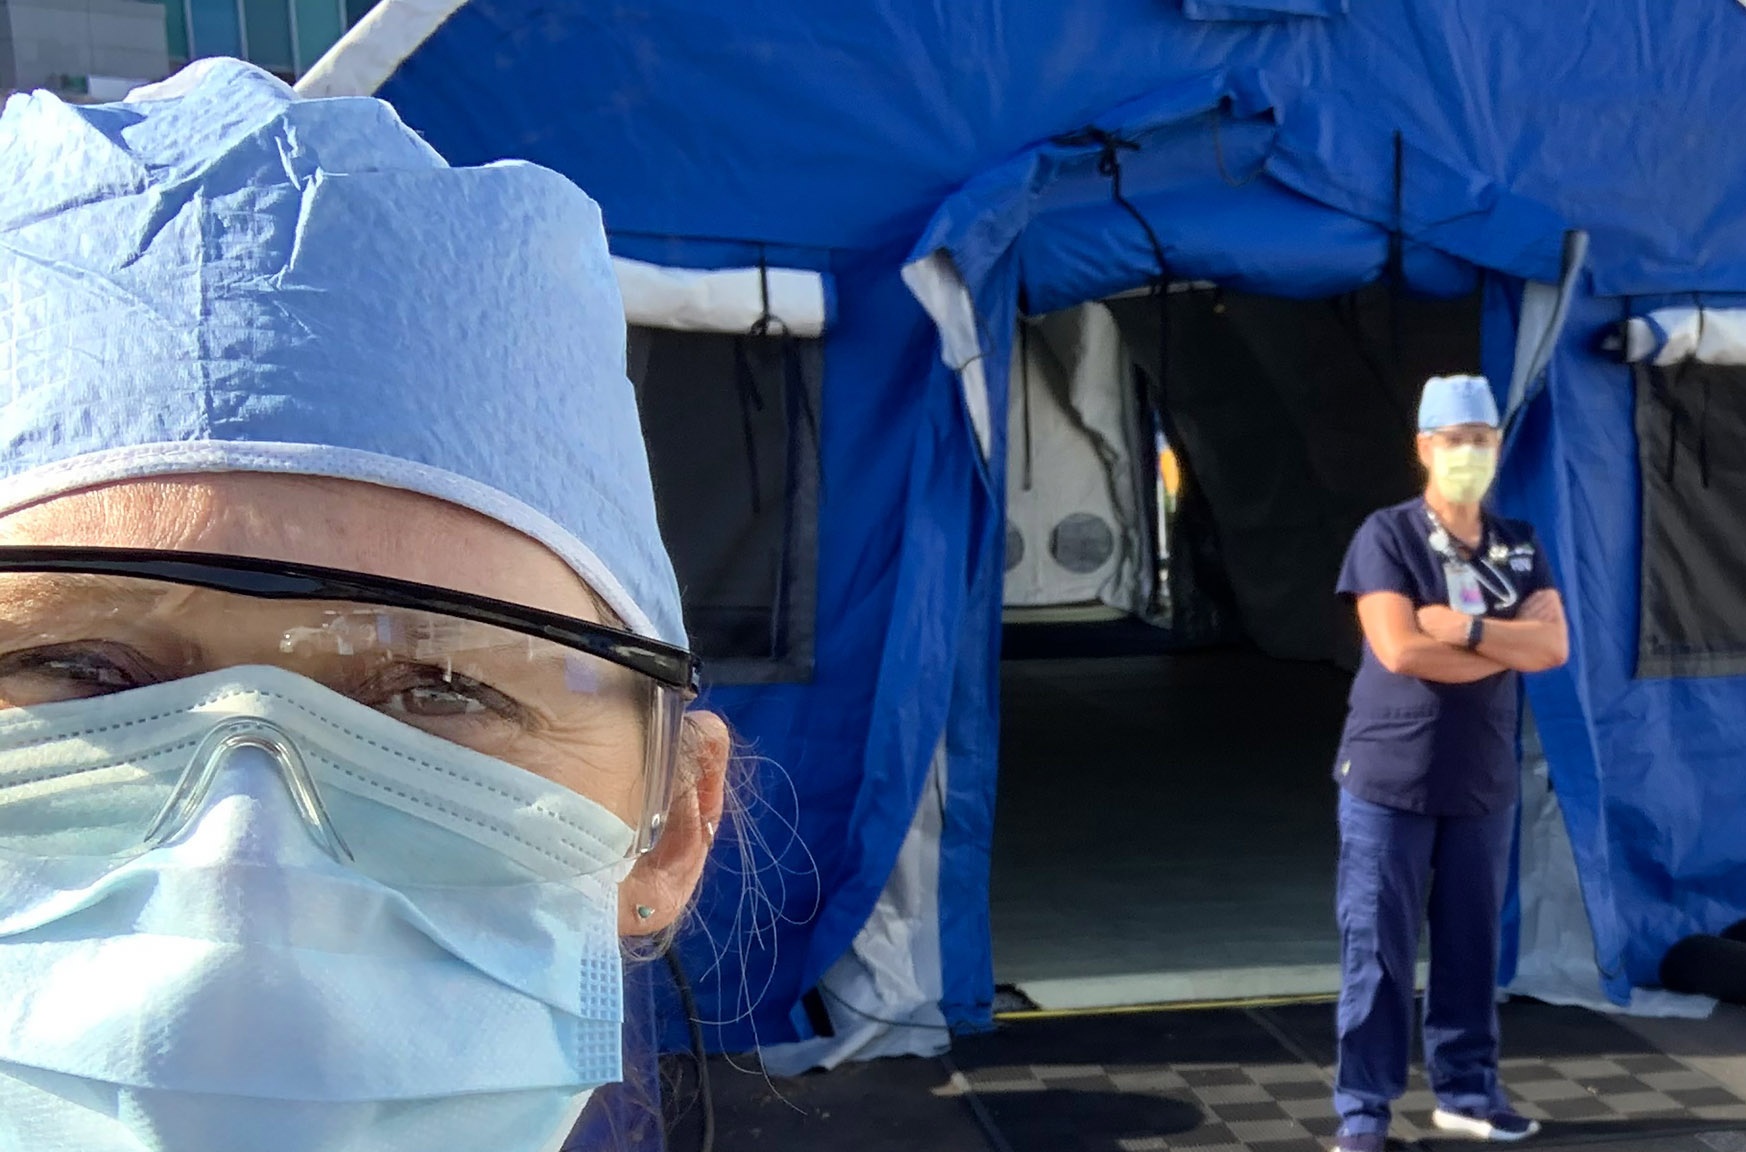 nurse tassia trink stands near tent